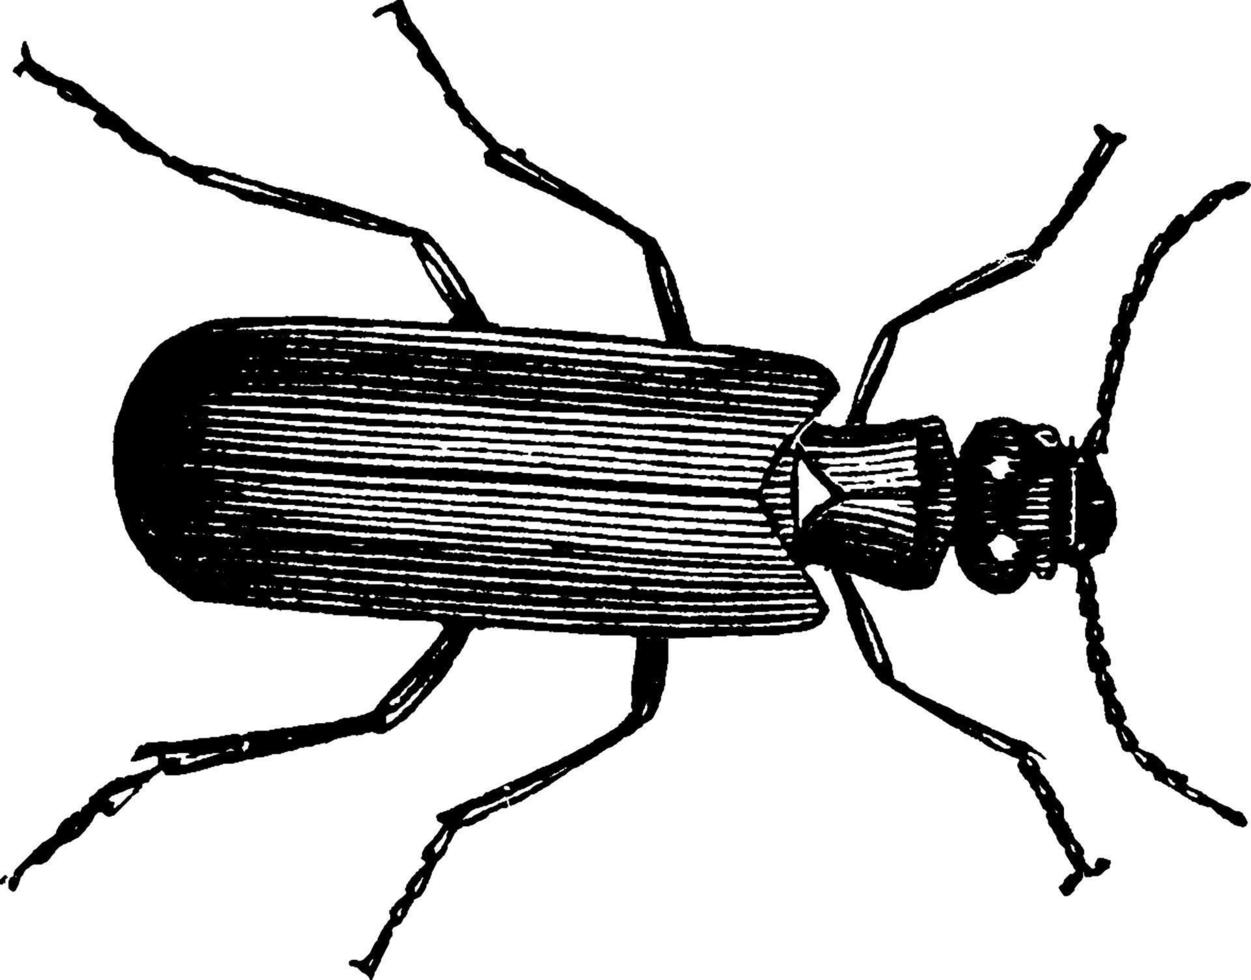 mosca espanhola, ilustração vintage. vetor